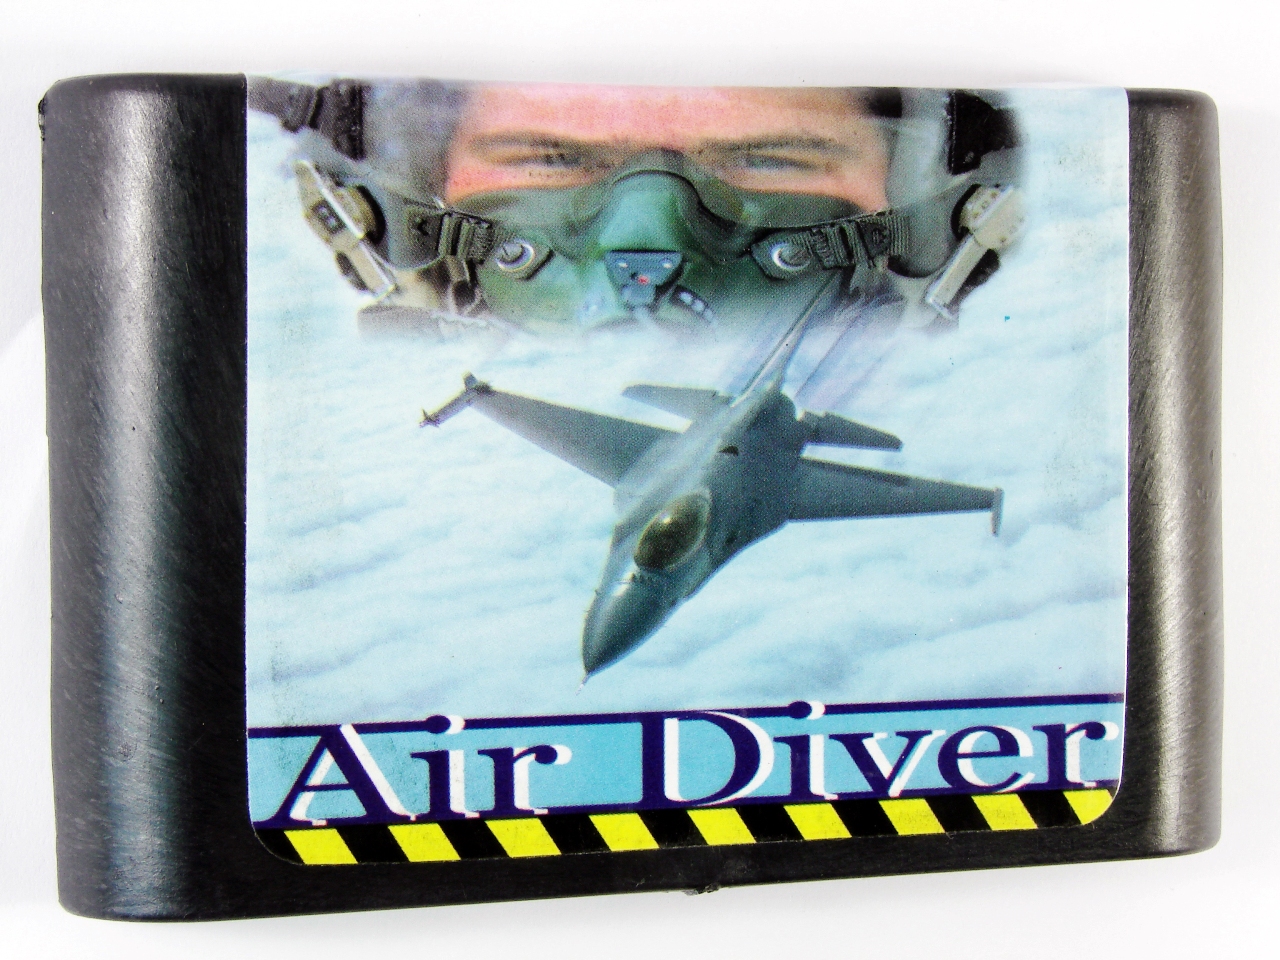   Sega Air Diver (Sega)